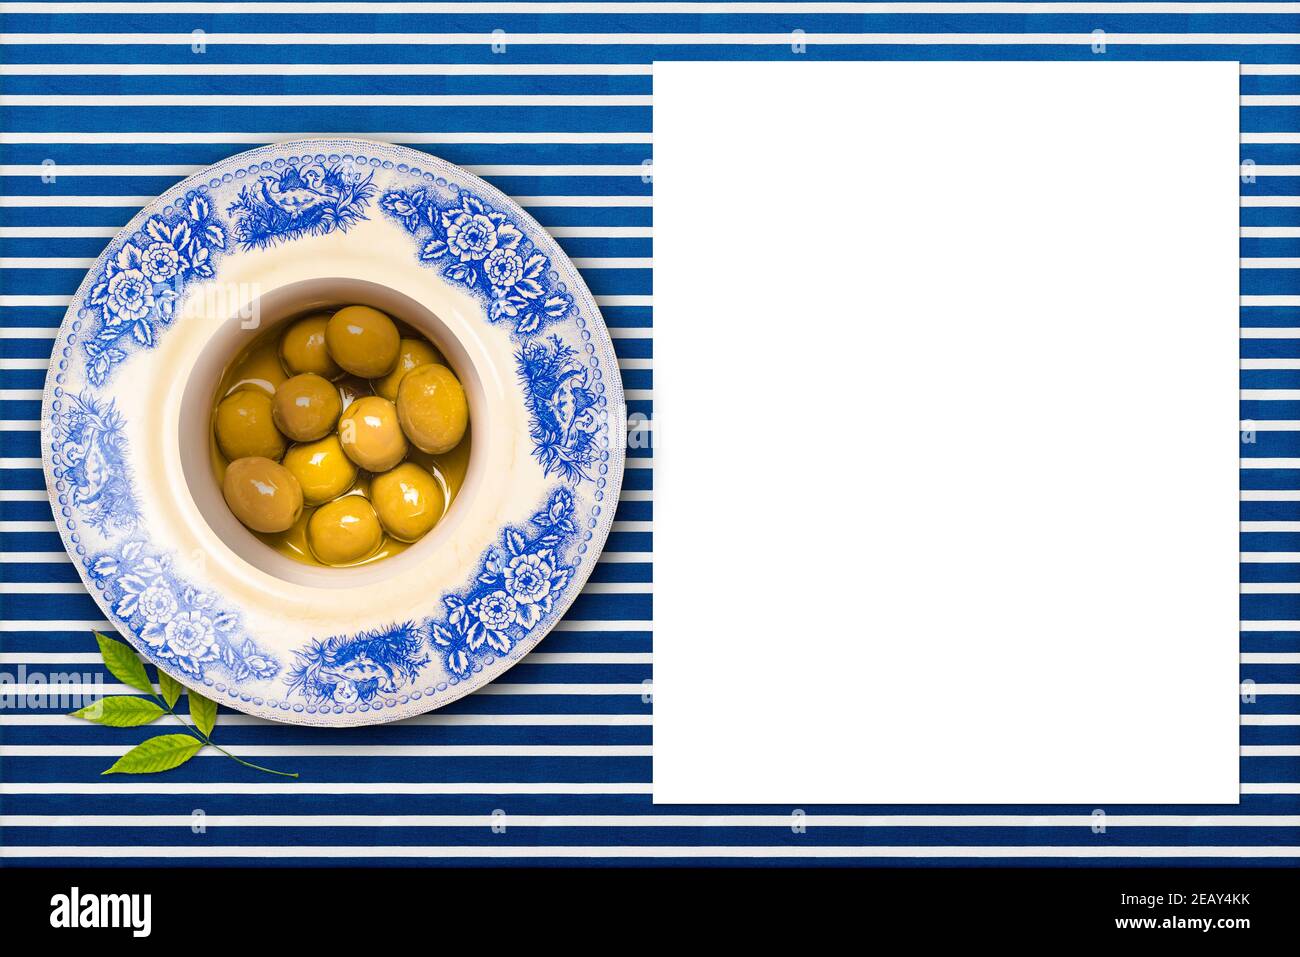 Olives sautées en os vert salé avec huile d'olive dans une assiette vintage sur une nappe doublée bleue et blanche et une feuille de papier vierge à écrire Banque D'Images